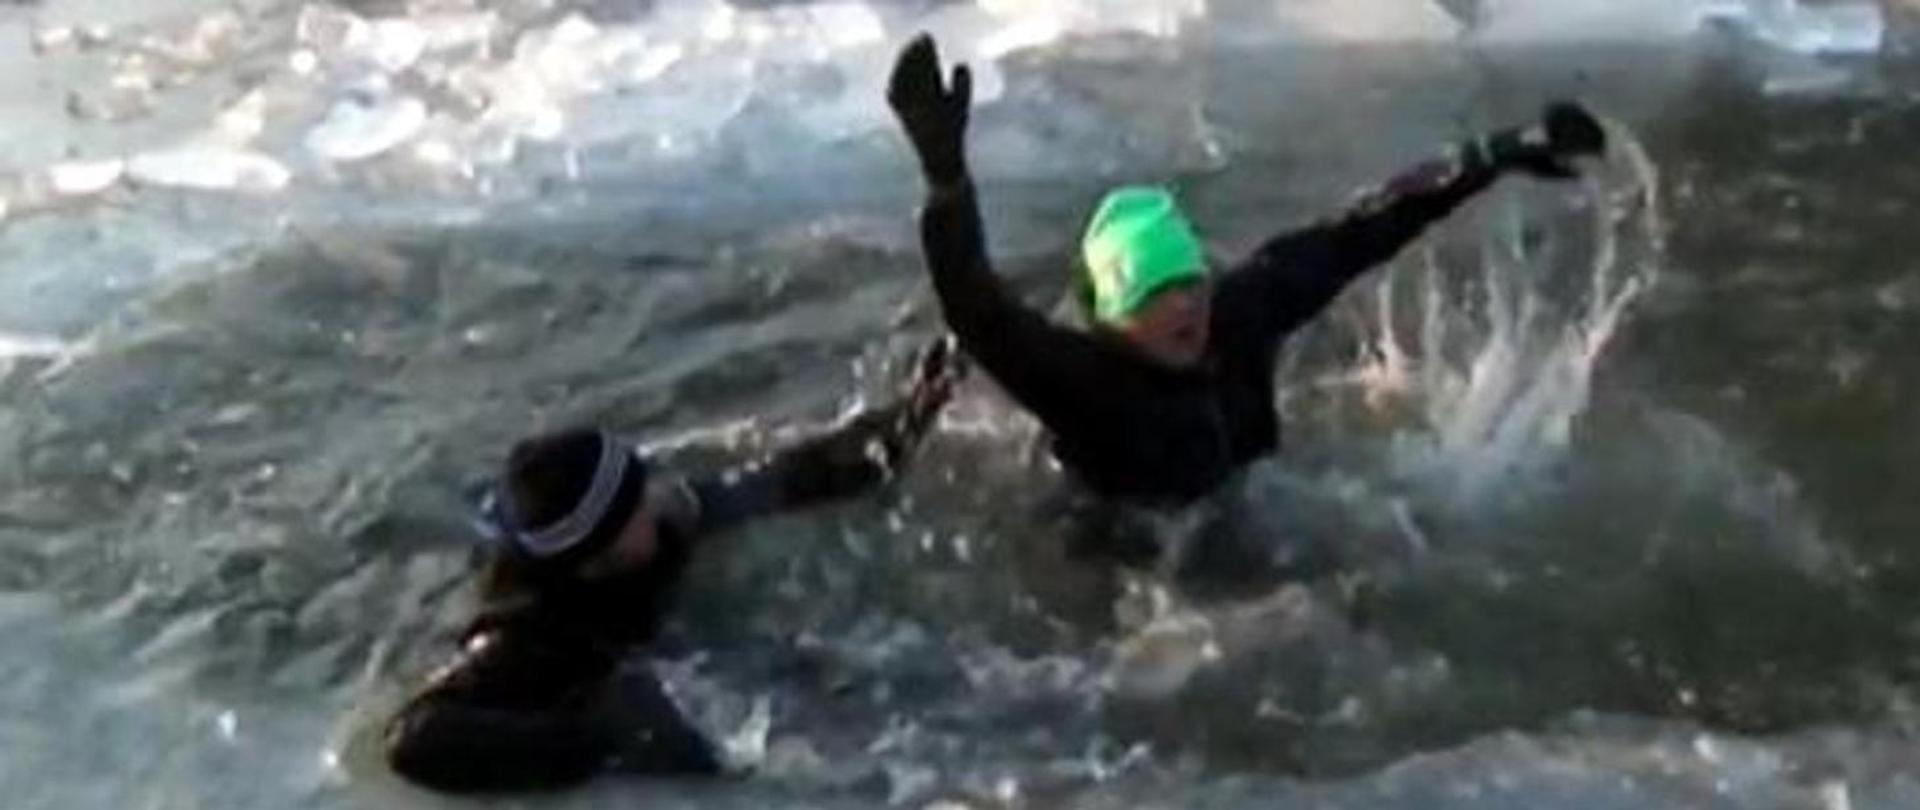 Zdjęcie przedstawia ludzi, pod którymi zarwał się lód i potrzebują pomocy